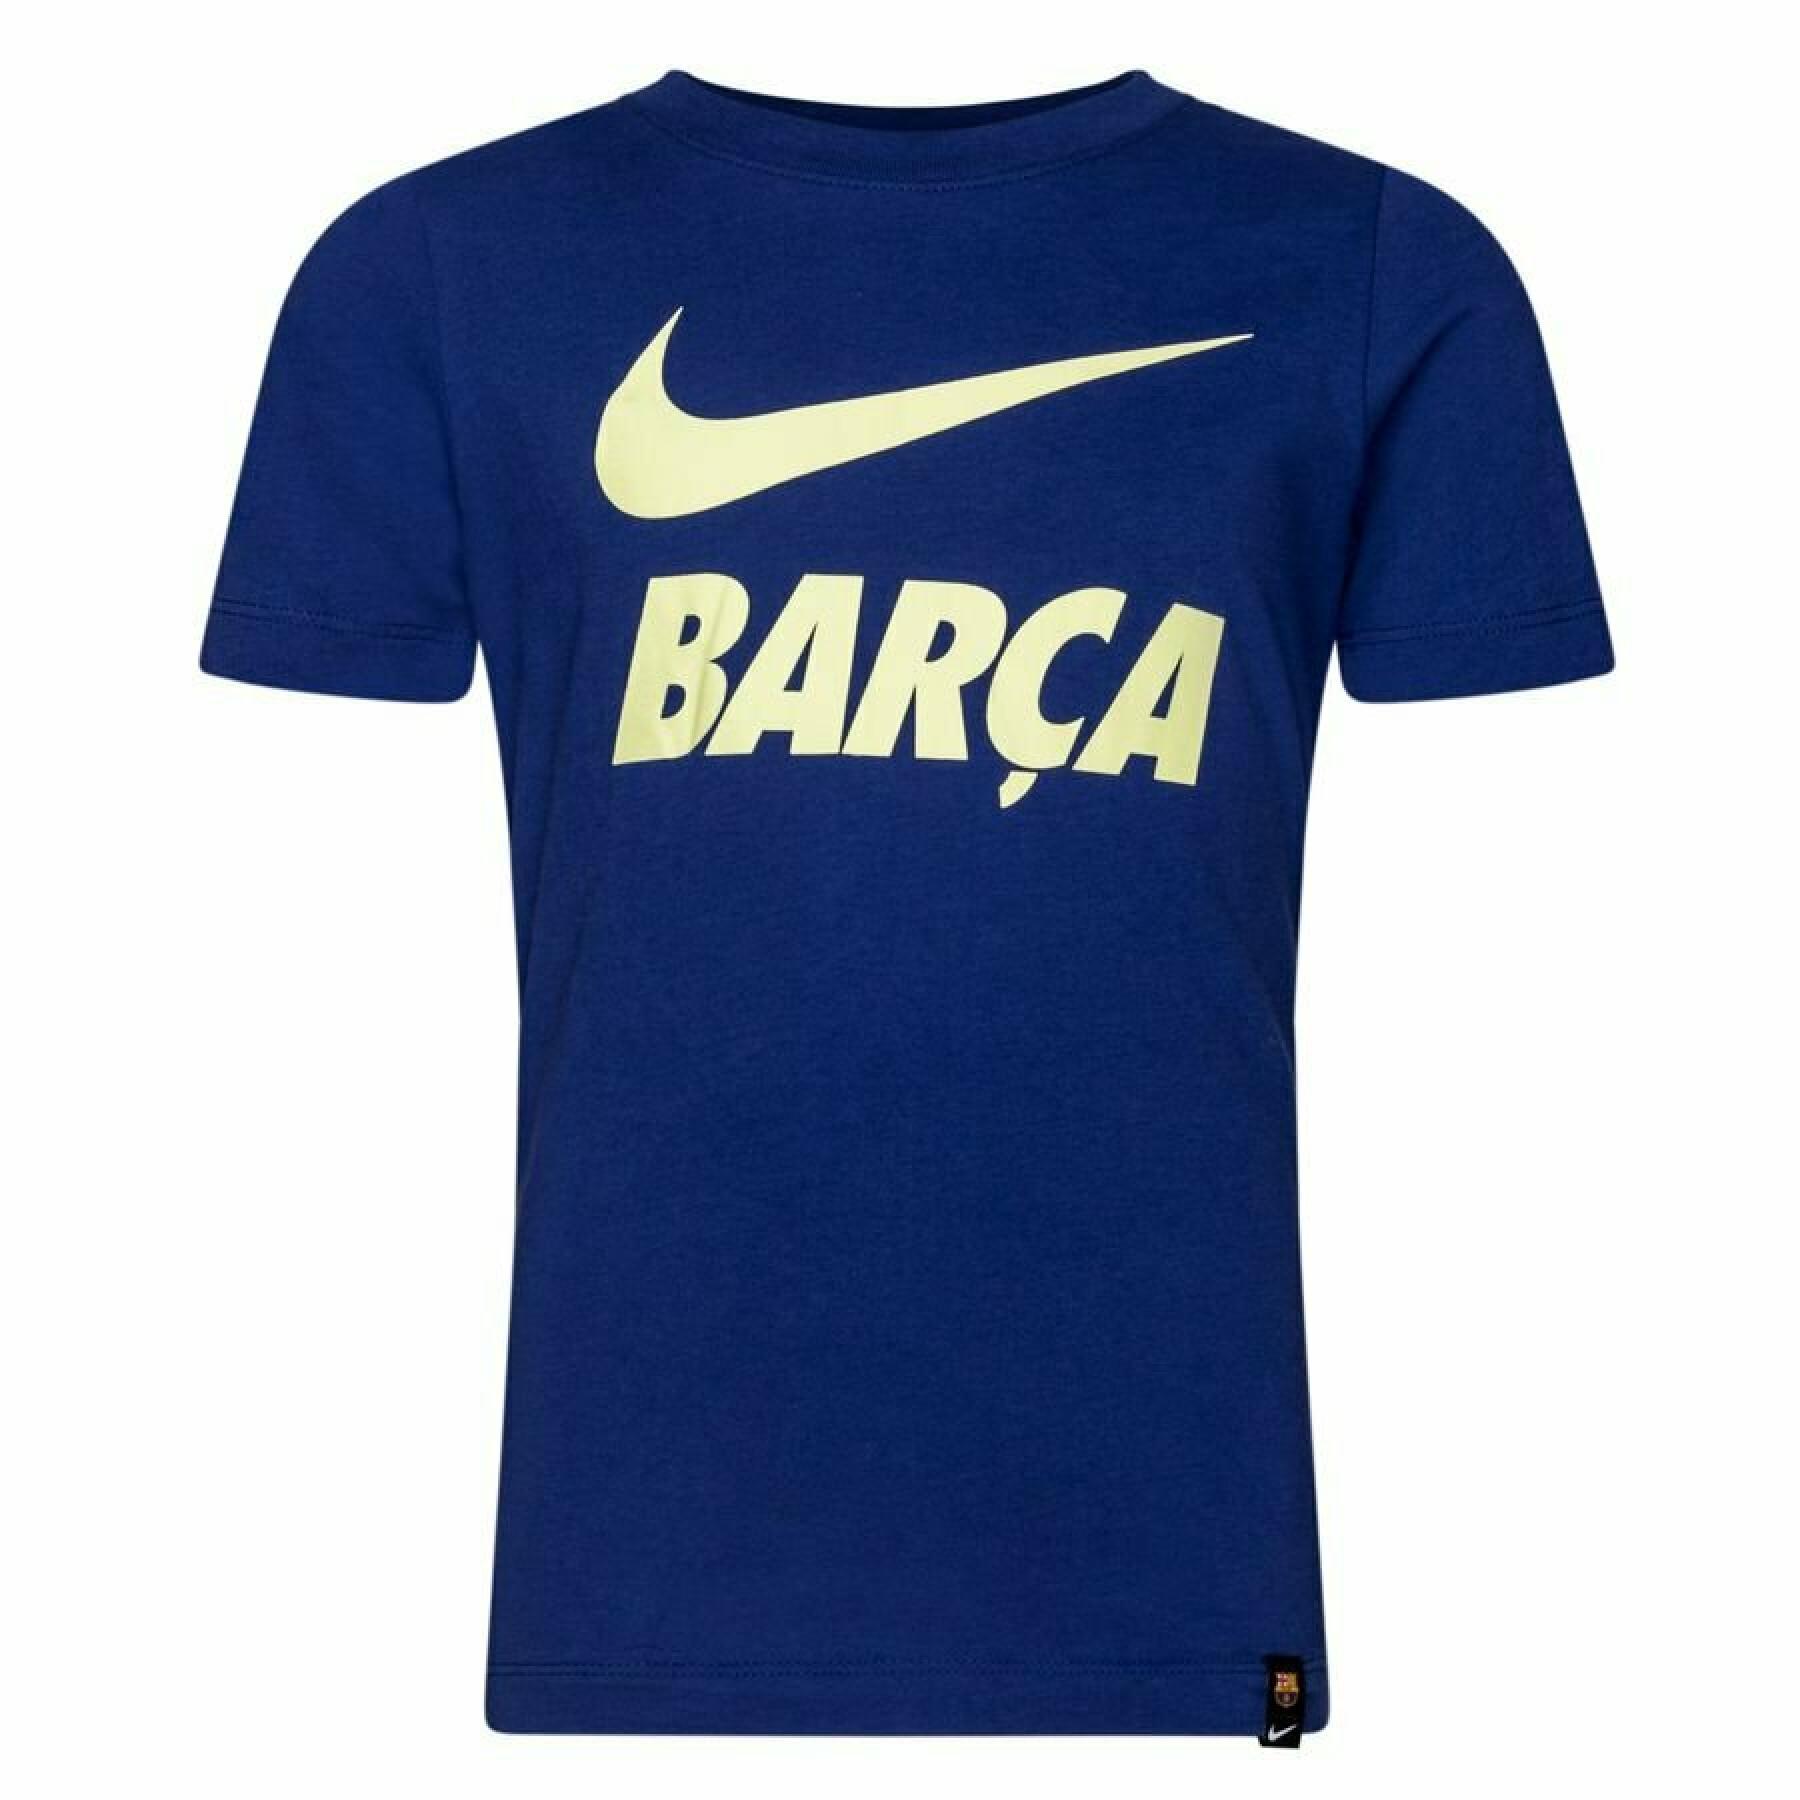 Koszulka dziecięca barcelona 2020/21